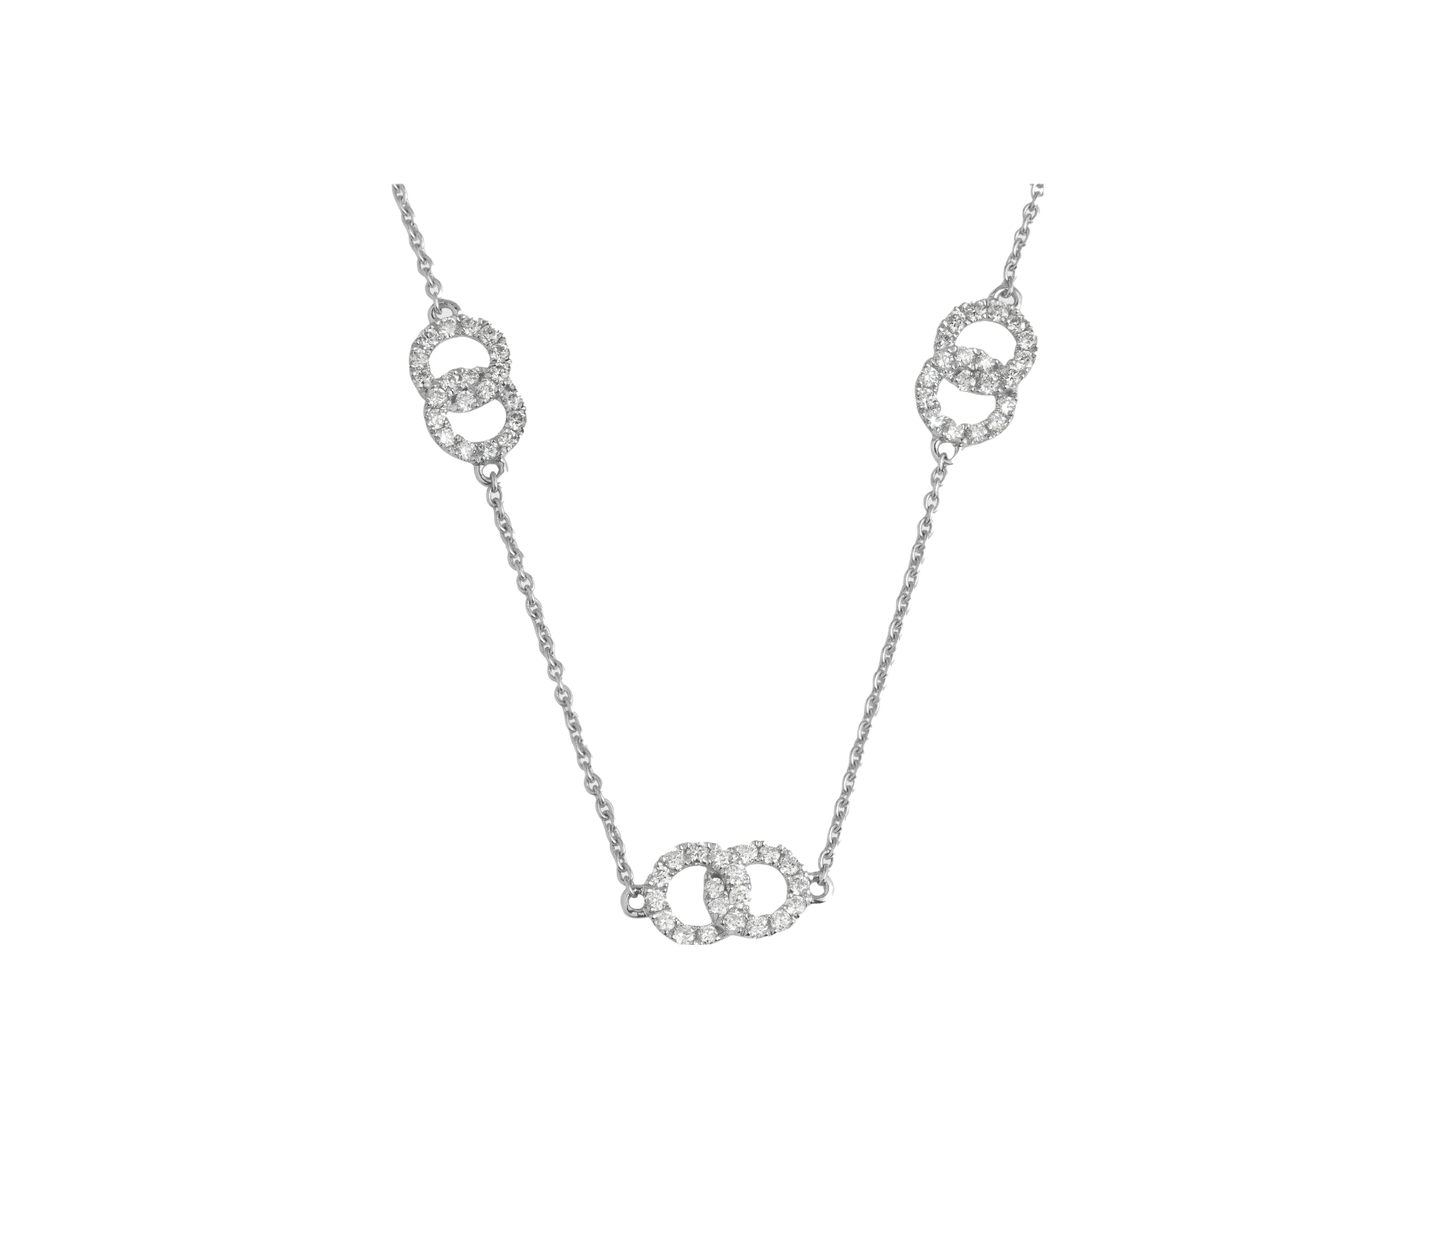 Diamond Pave Interlocking Ring Necklace